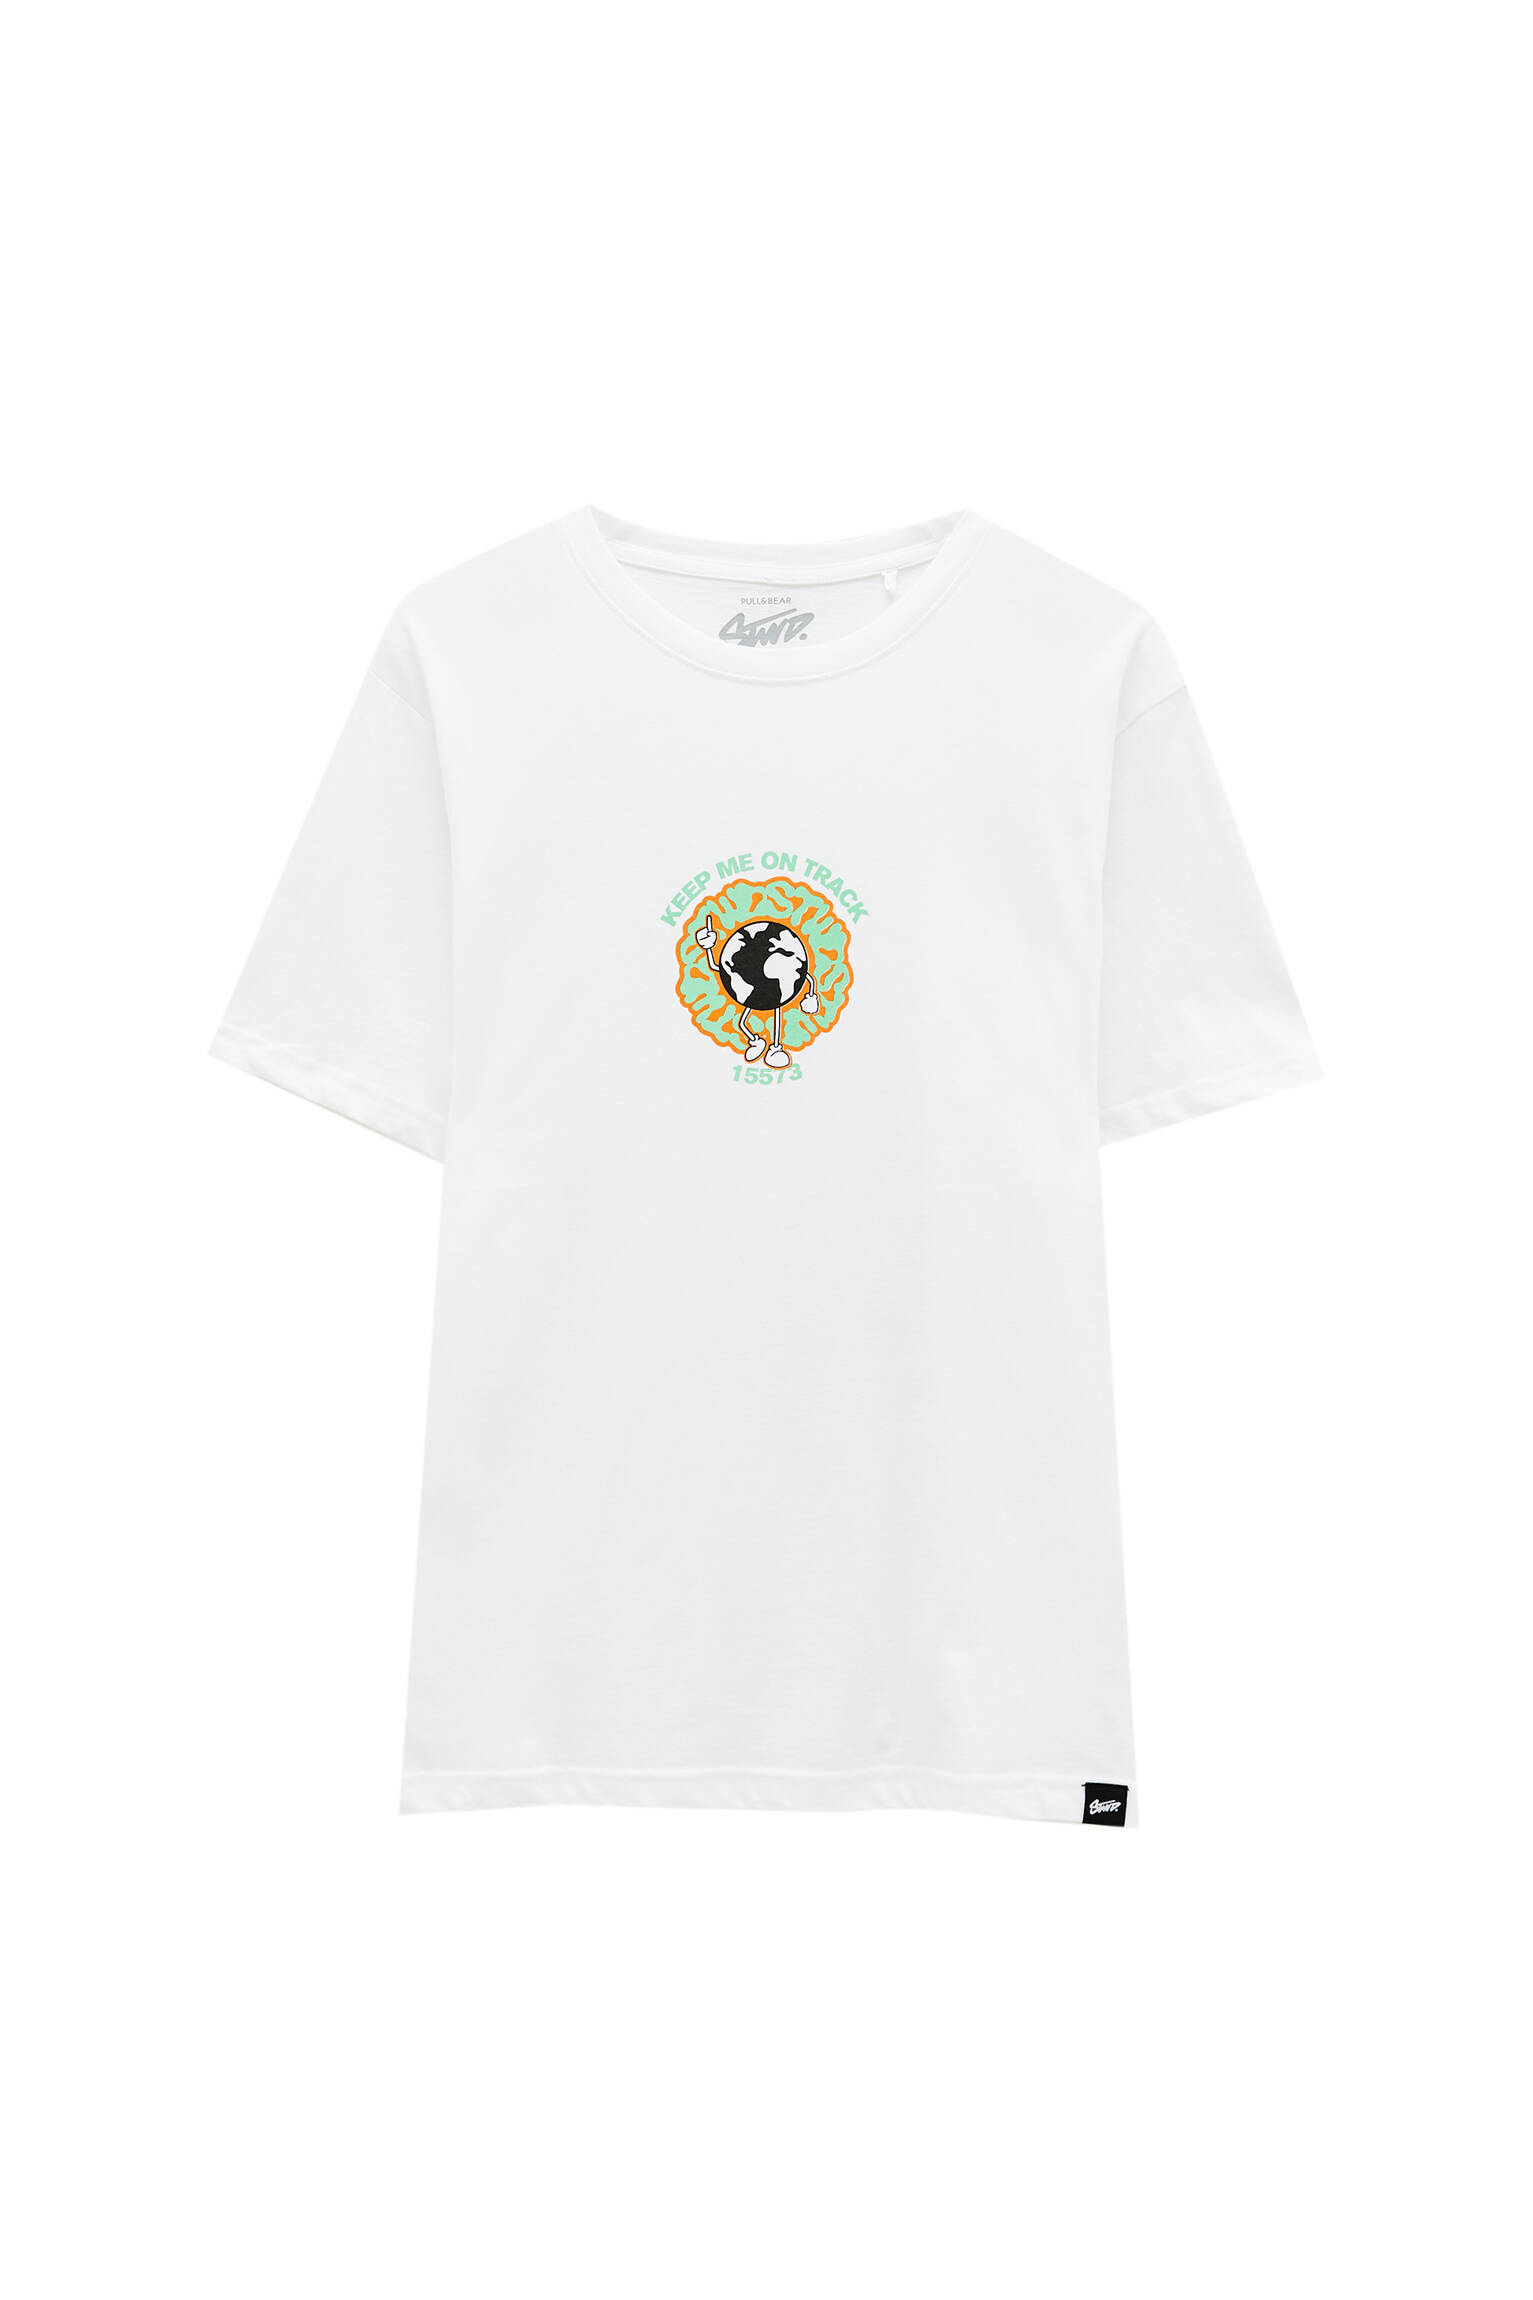 Pull&bear Homme T-shirt Blanc En Coton, à Manches Courtes Et Col Rond, Avec Illustration Et Inscript